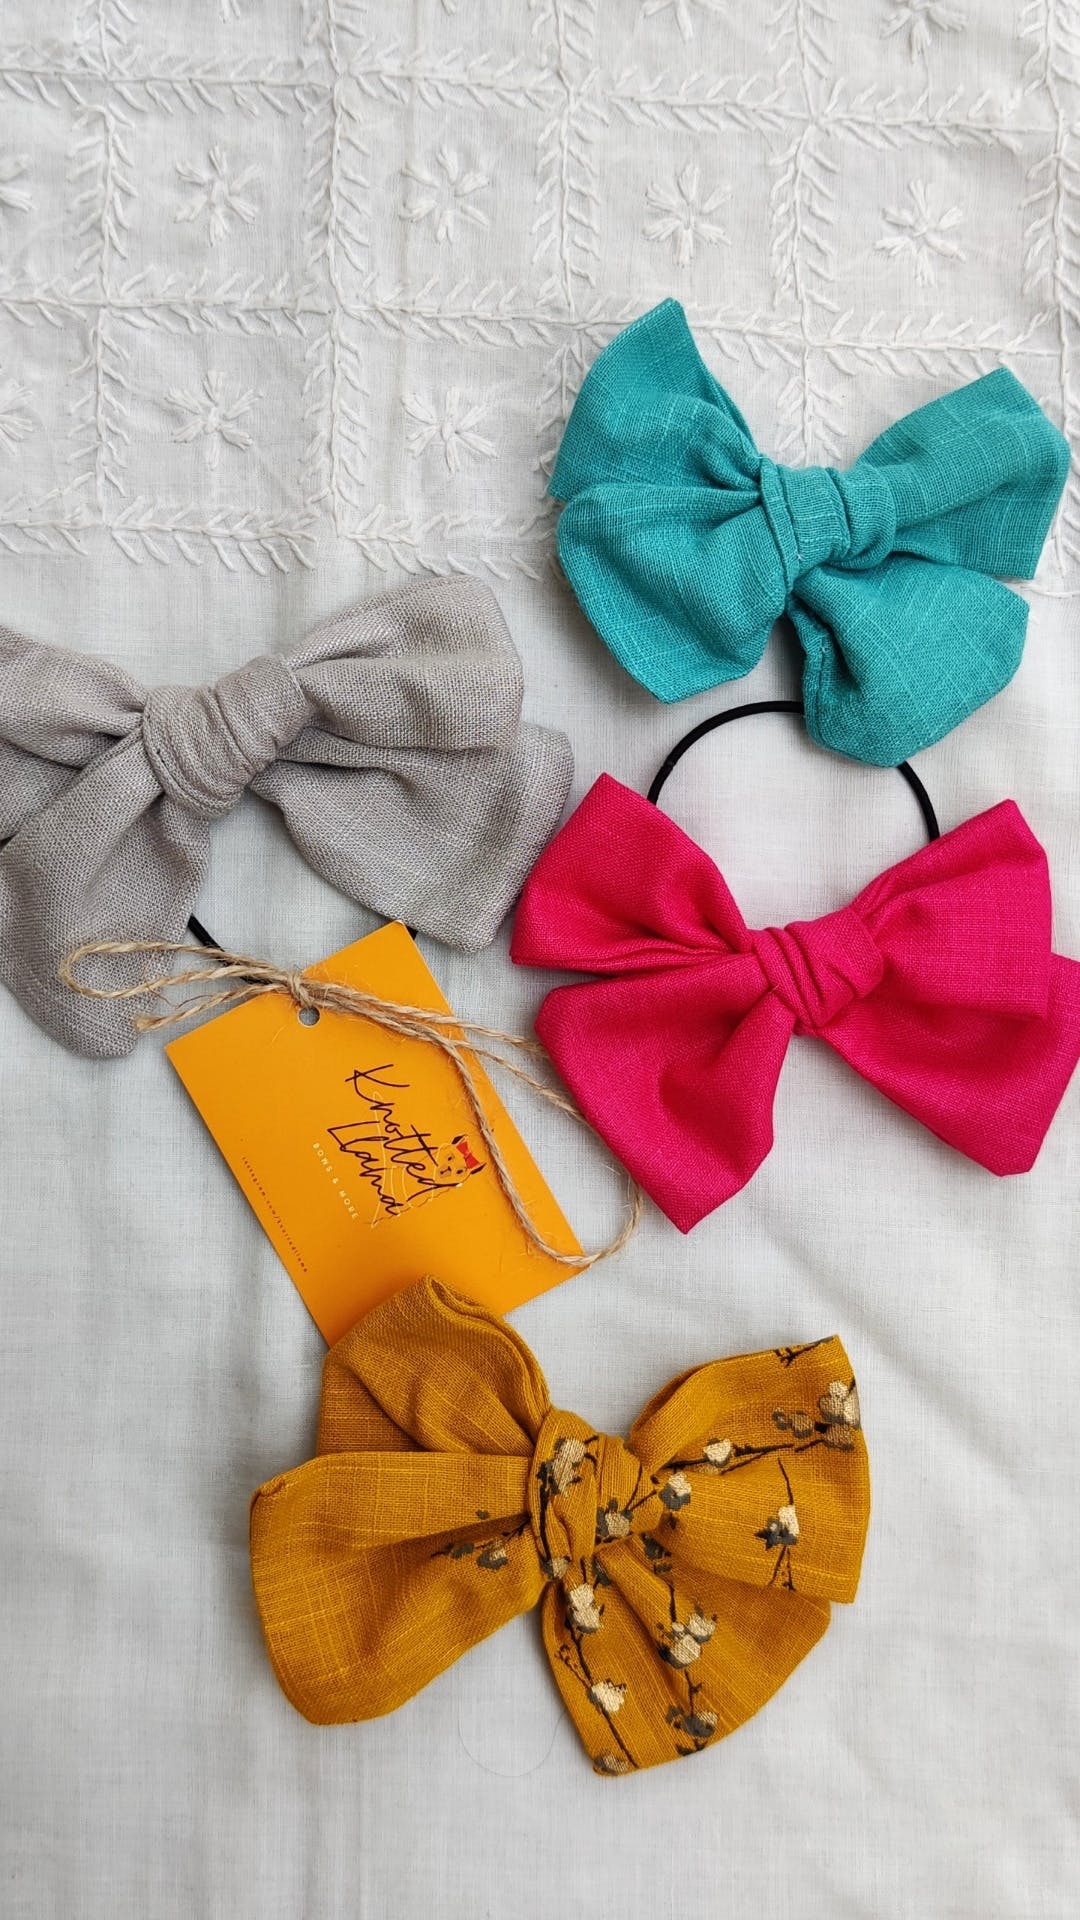 Bow tie,Hair accessory,Yellow,Ribbon,Fashion accessory,Tie,Headband,Hair tie